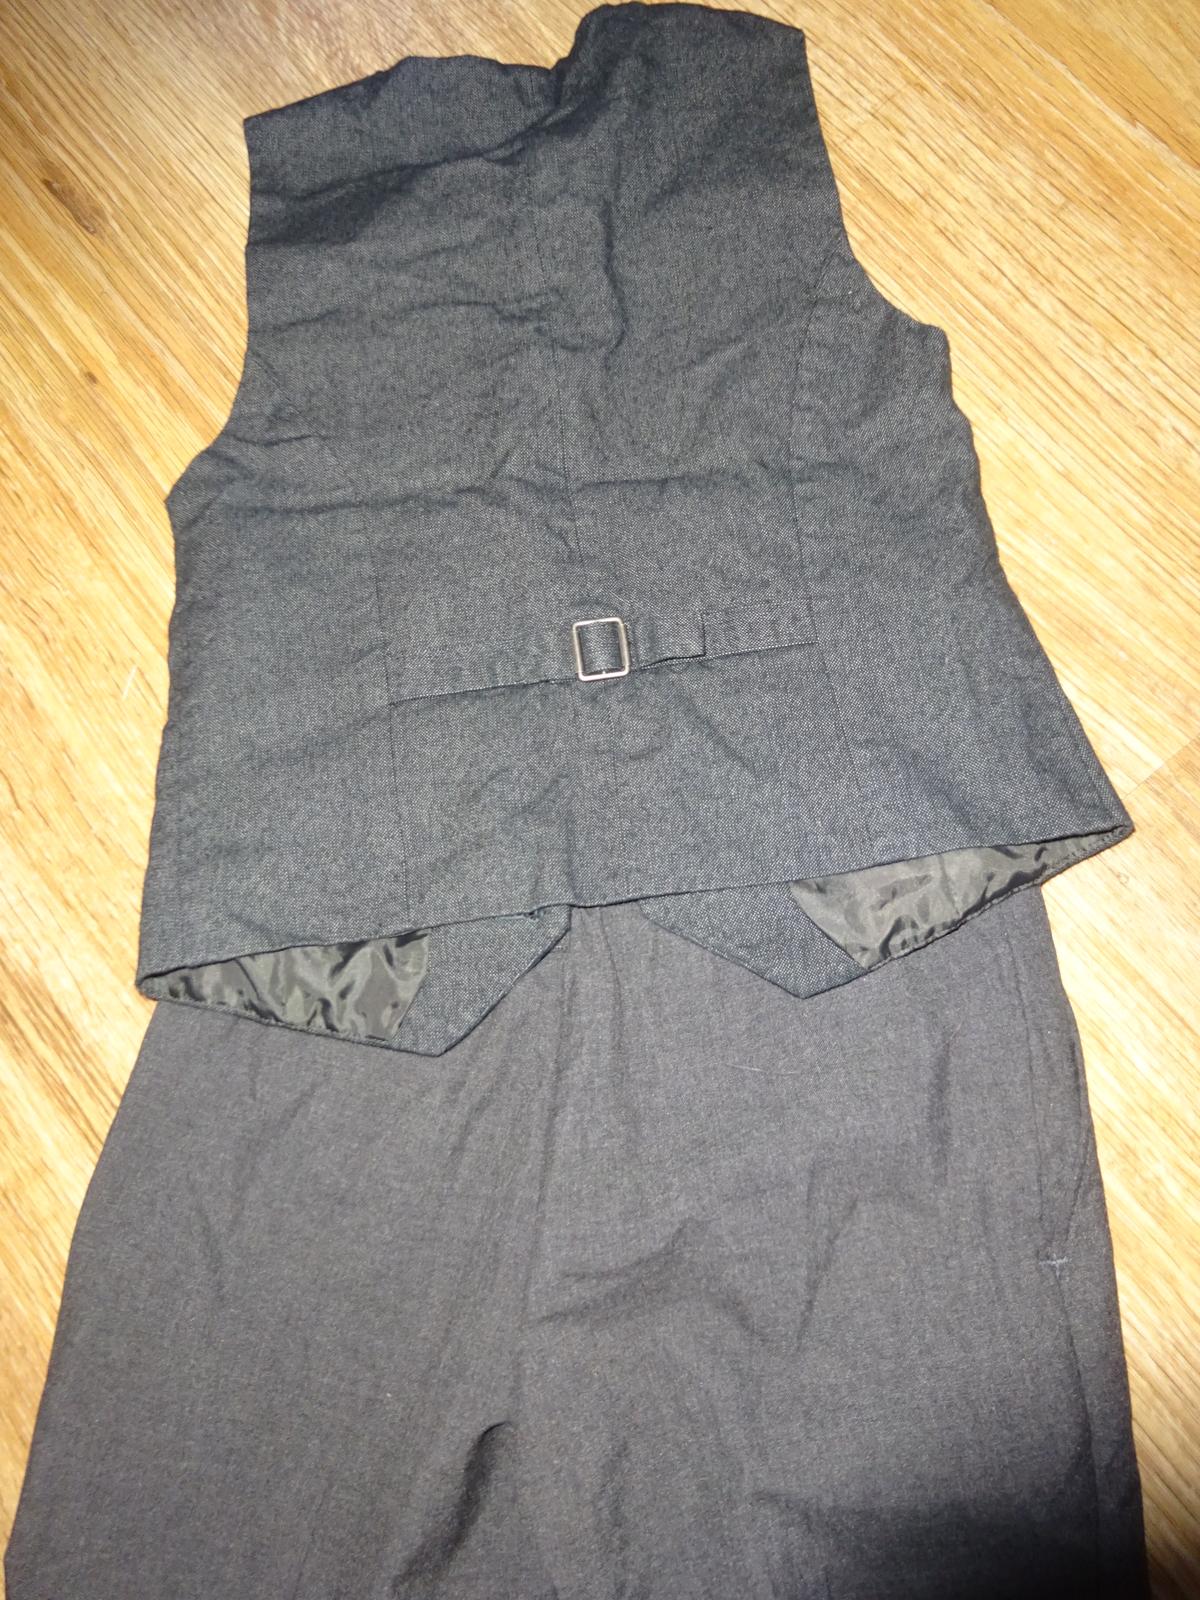 Šedý komplet kalhot a vesty vel. 9 let - Obrázek č. 1